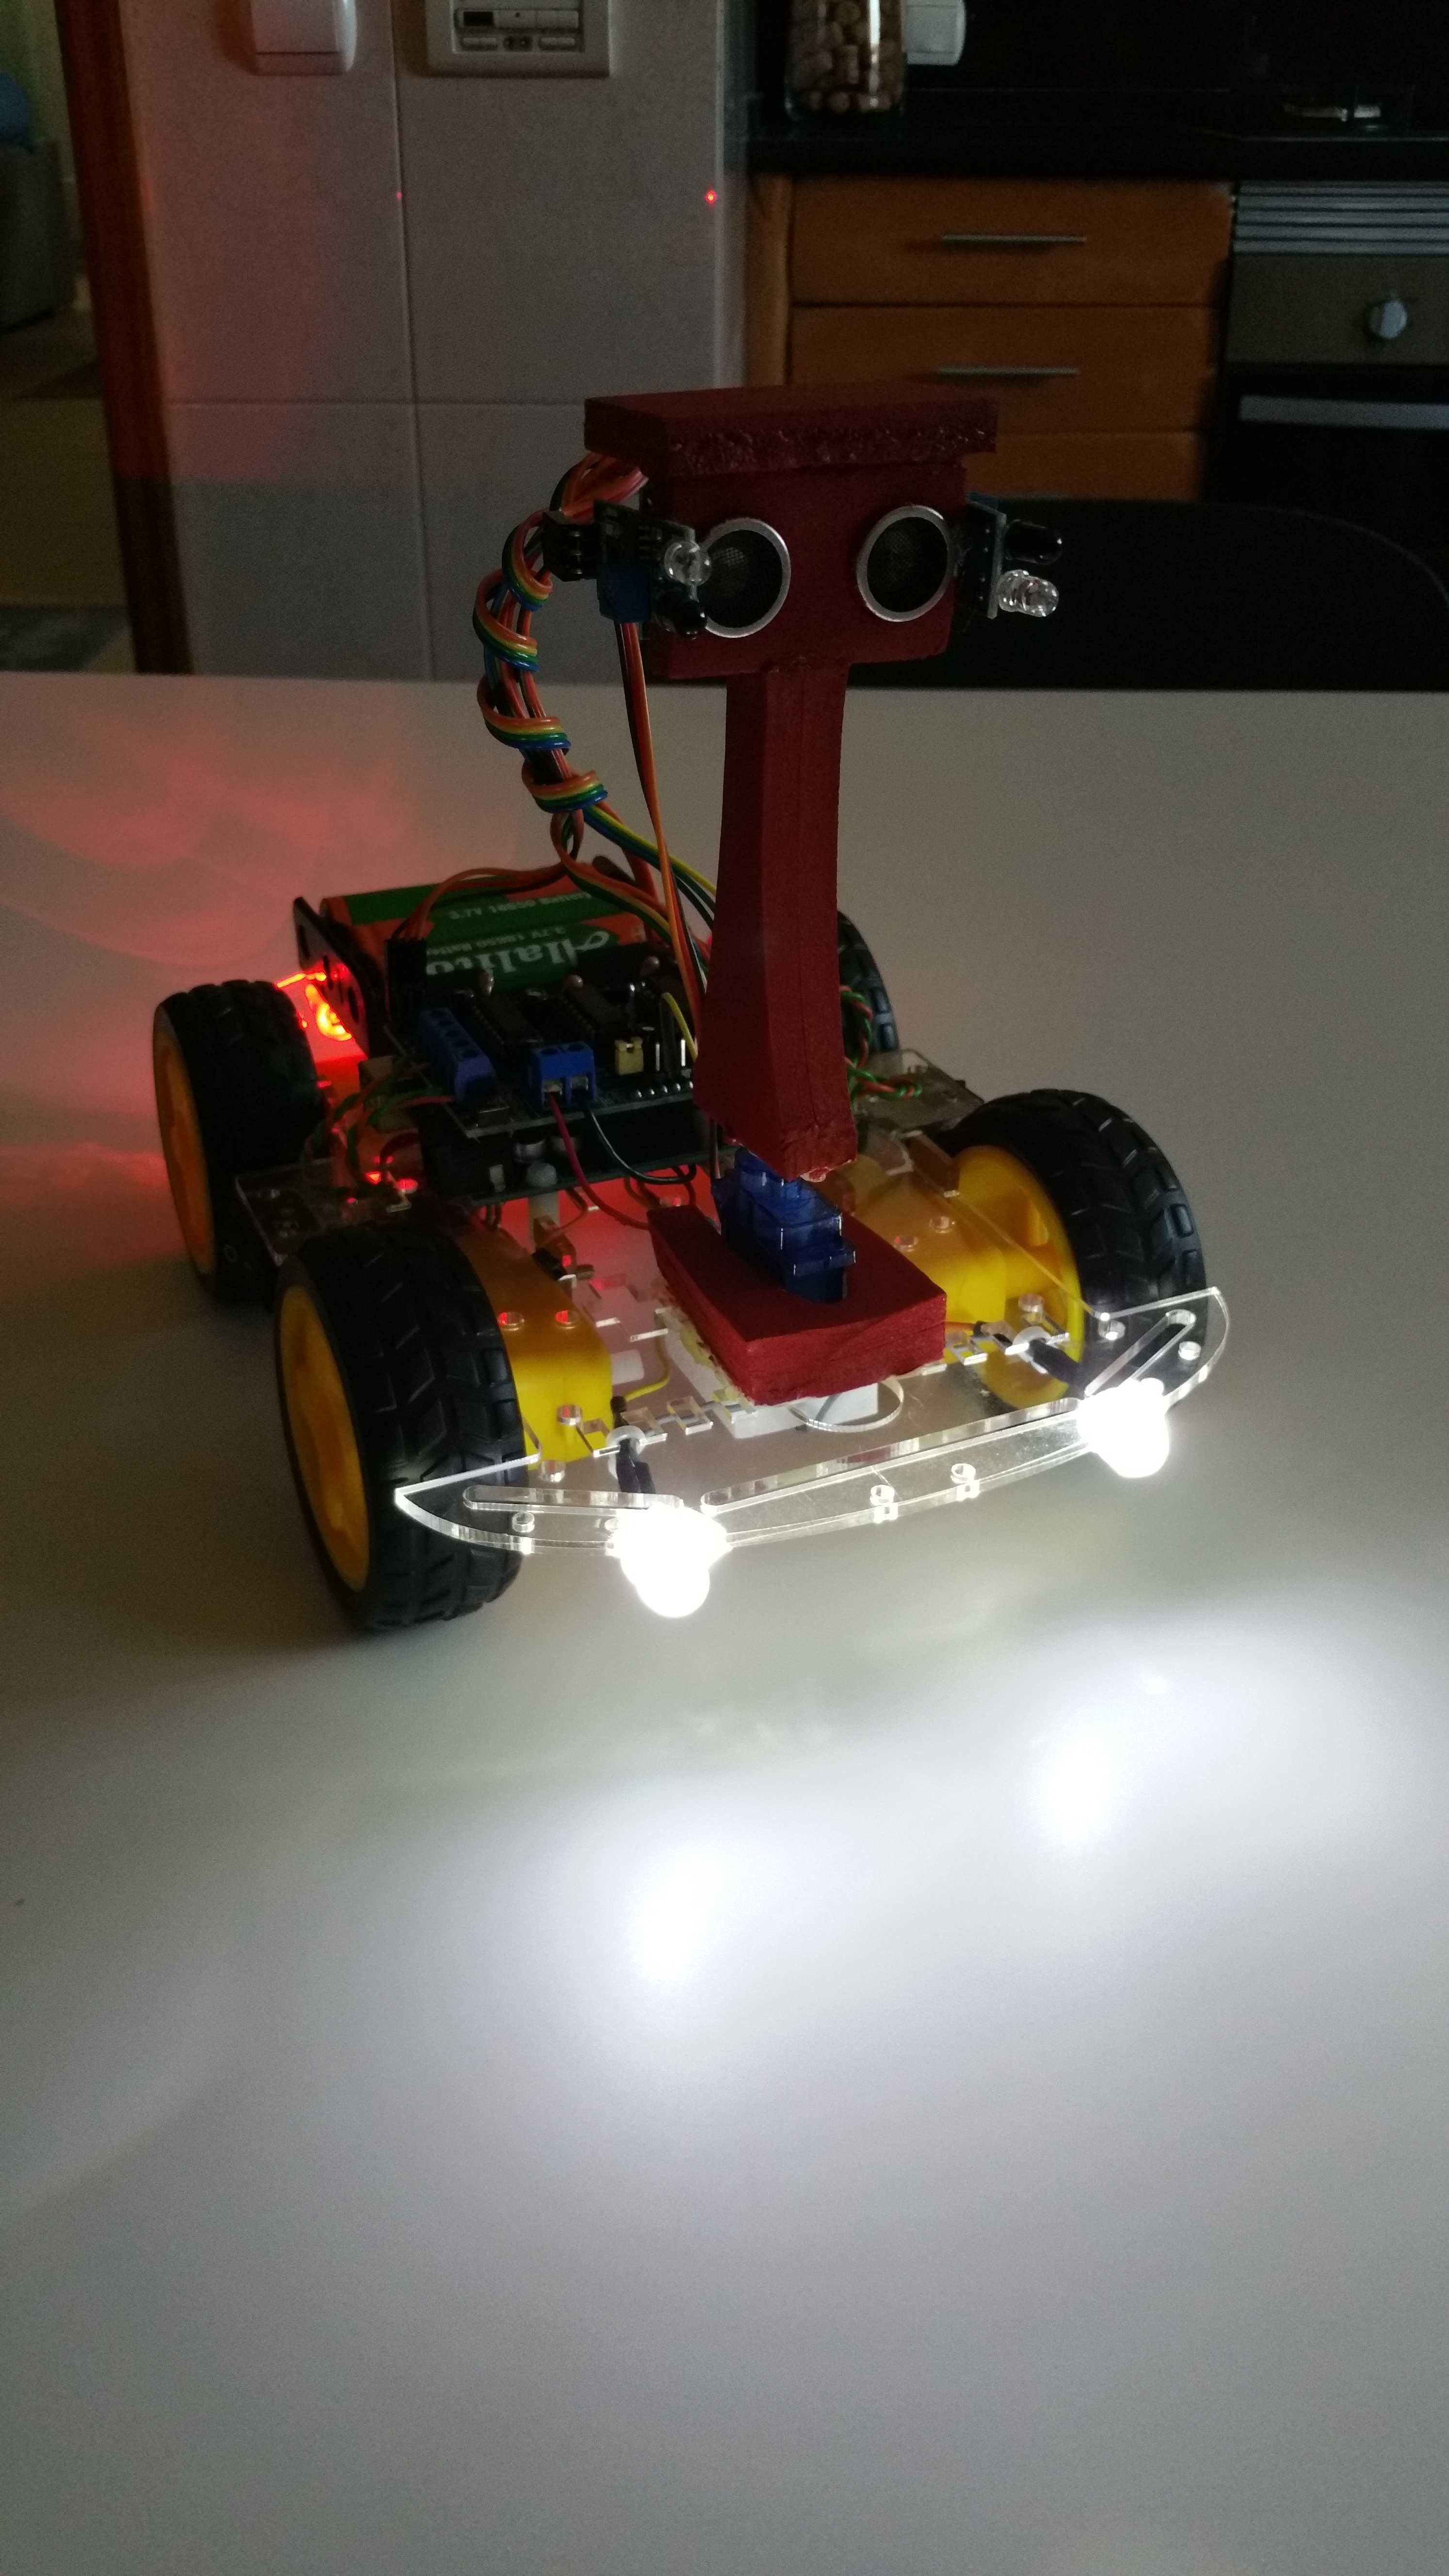 Carro Robot Educacional Arduino programado Seguidor Humanos c/luzes.